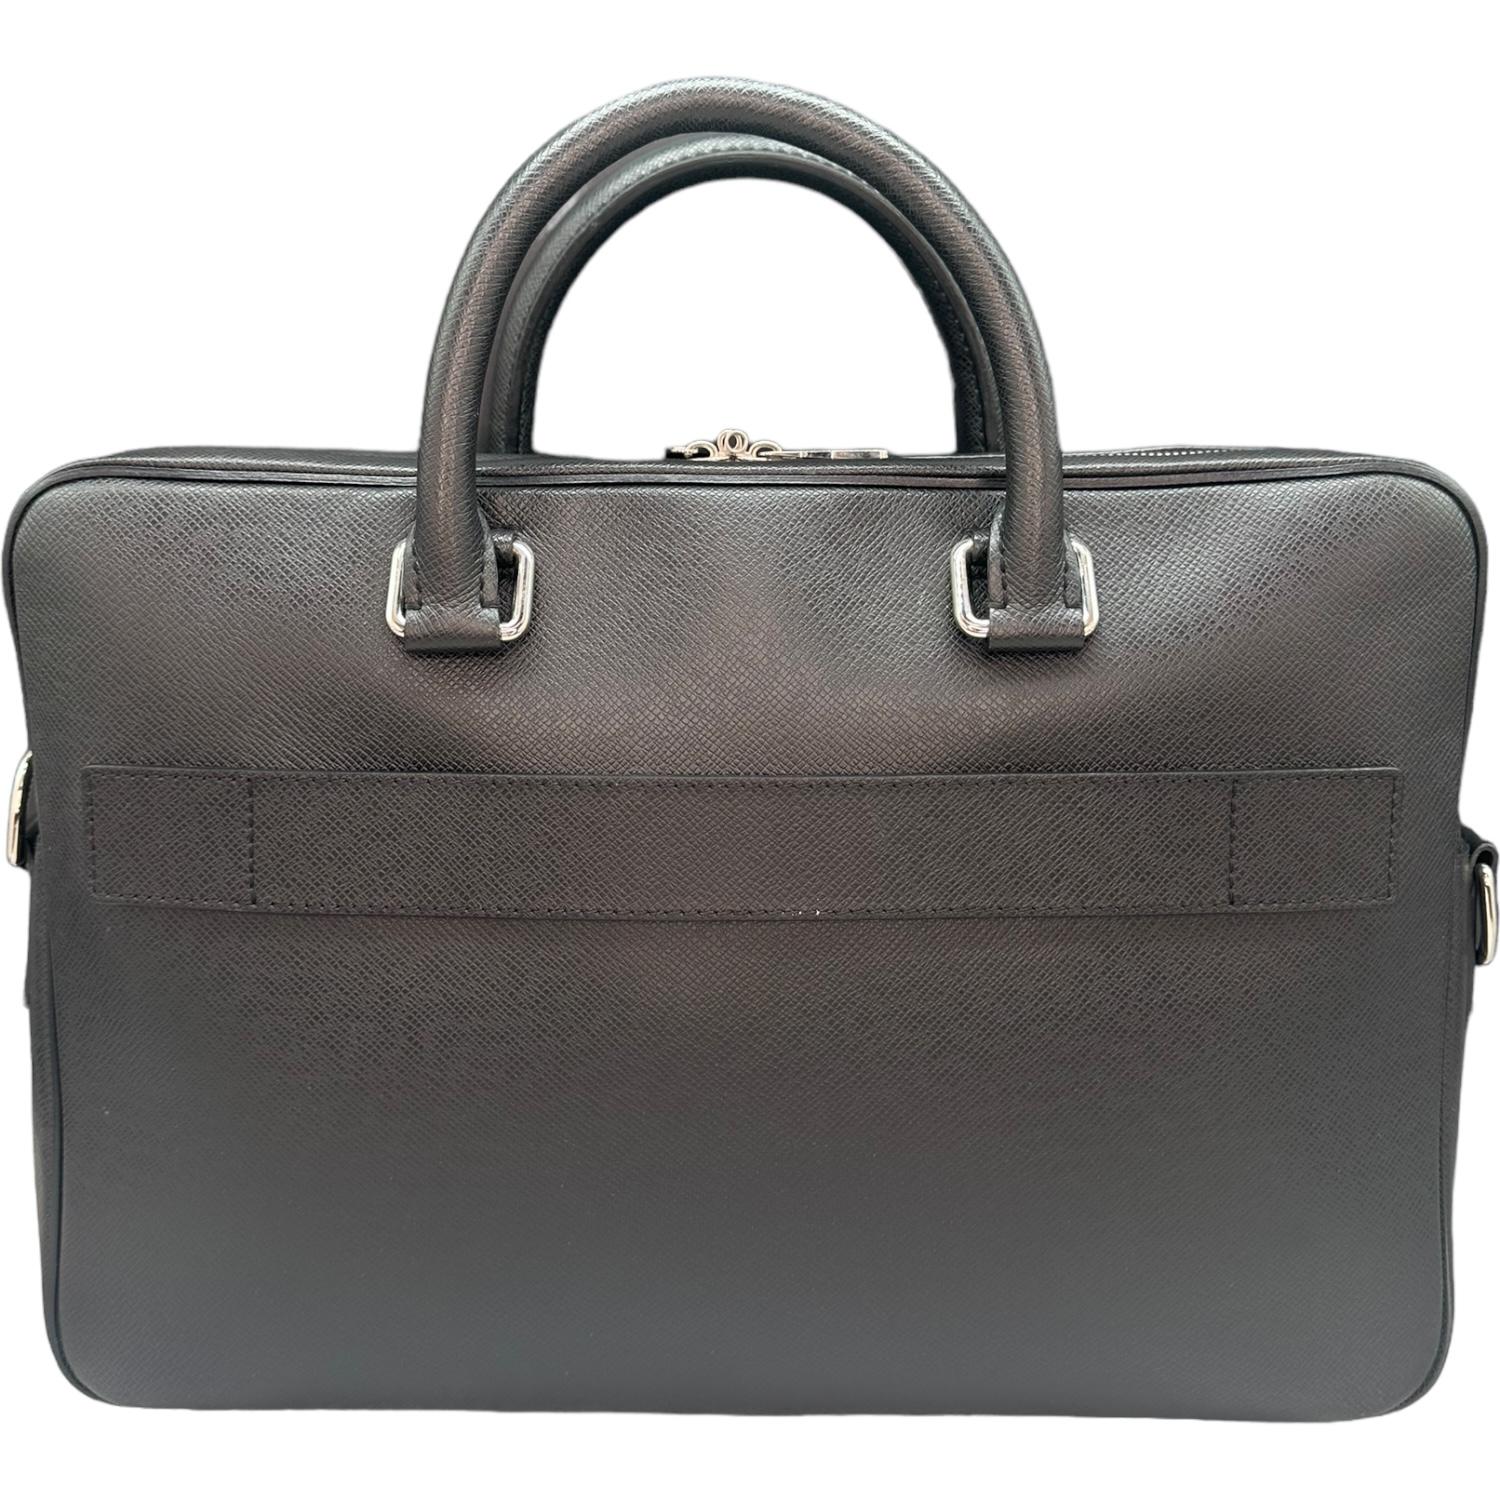 Ce sac Porto Document Business de Louis Vuitton est finement fabriqué en cuir Taiga noir, avec des garnitures en cuir et des ferrures en métal Gun. Il est doté de deux poignées supérieures en cuir roulé. Il comporte une poche zippée sur le devant et